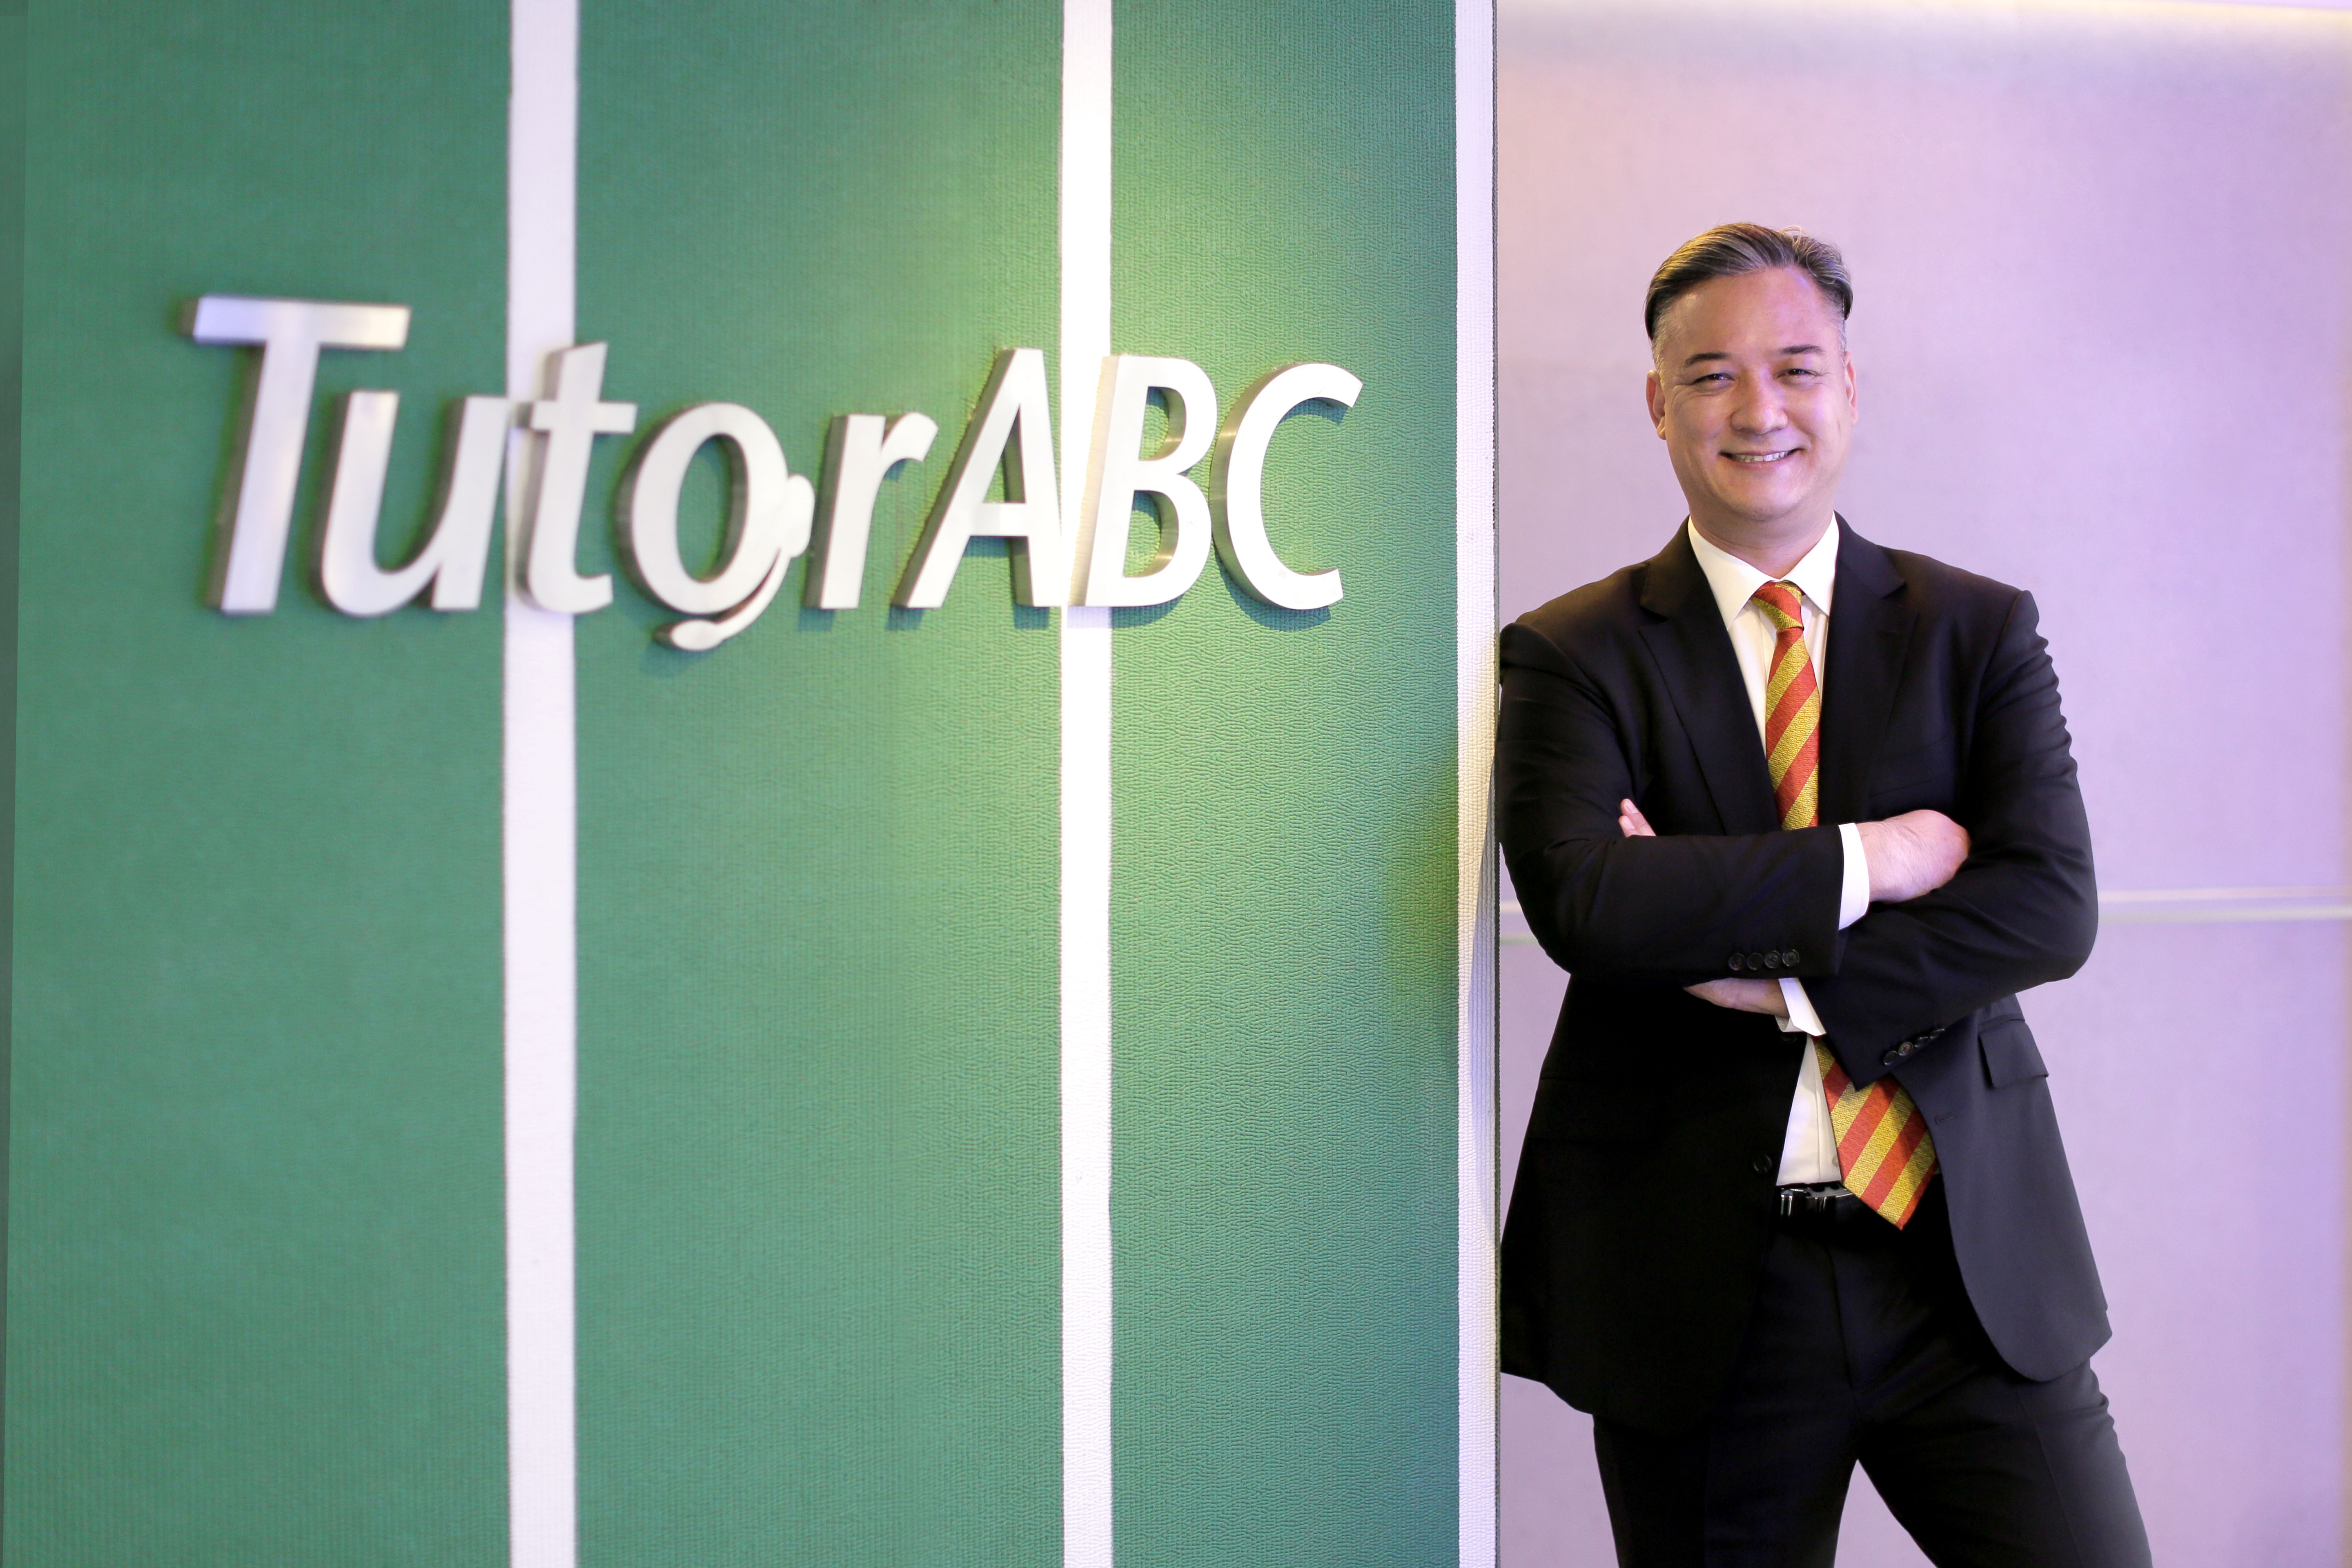 【外媒報導】泰國《世界日報》刊載TutorABC董事長對雙語教育之觀點